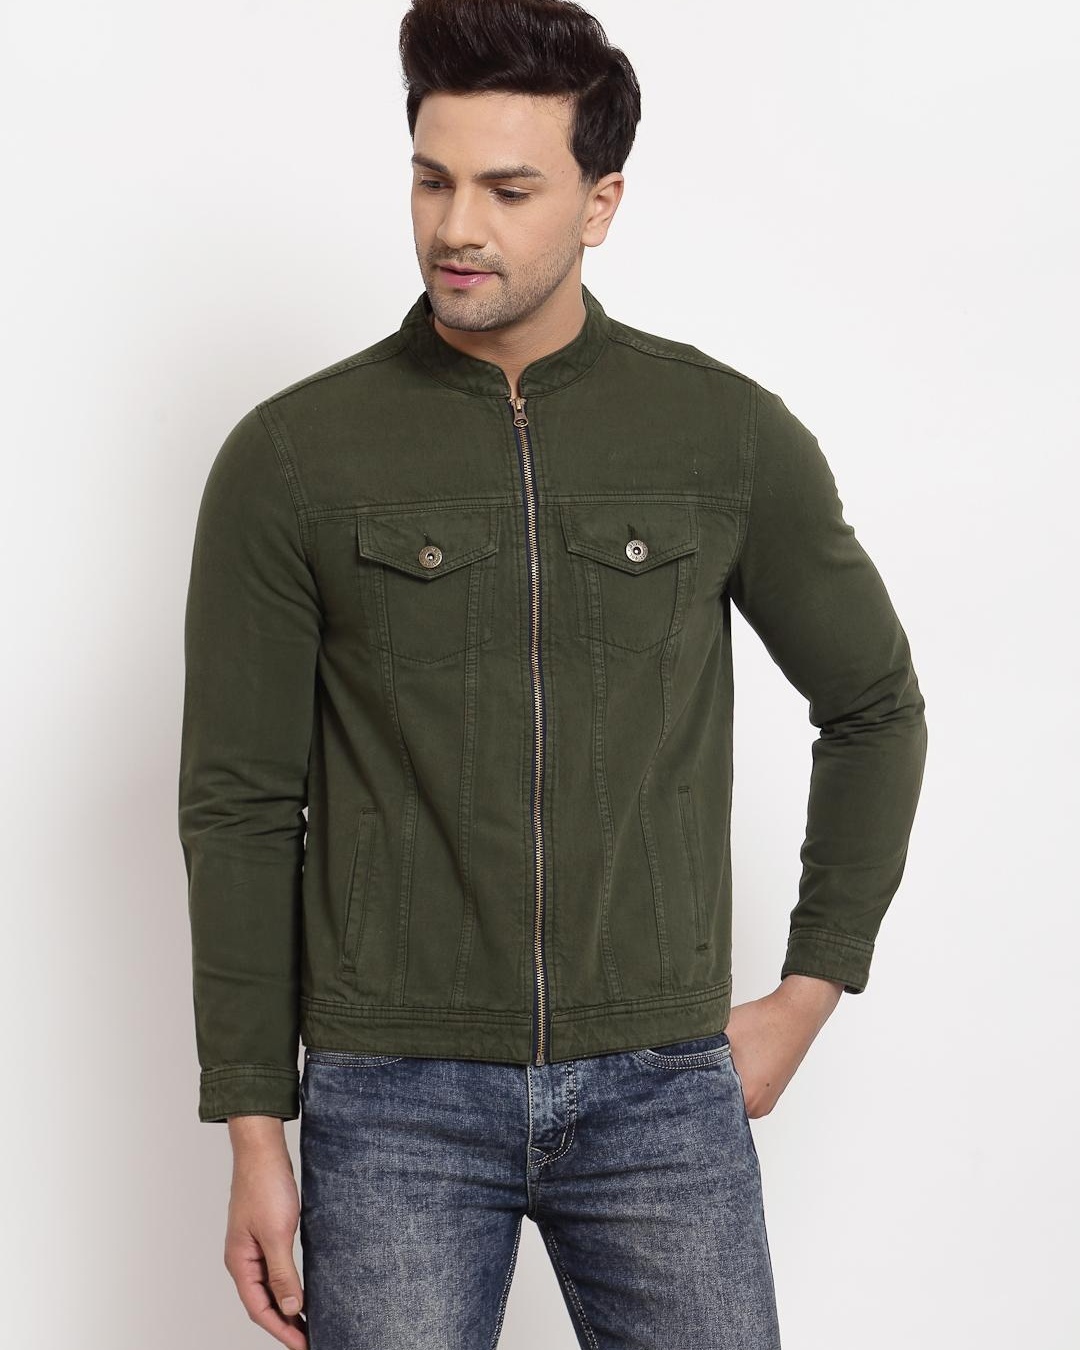 Buy Style Quotient Men's Green Jacket for Men Green Online at Bewakoof